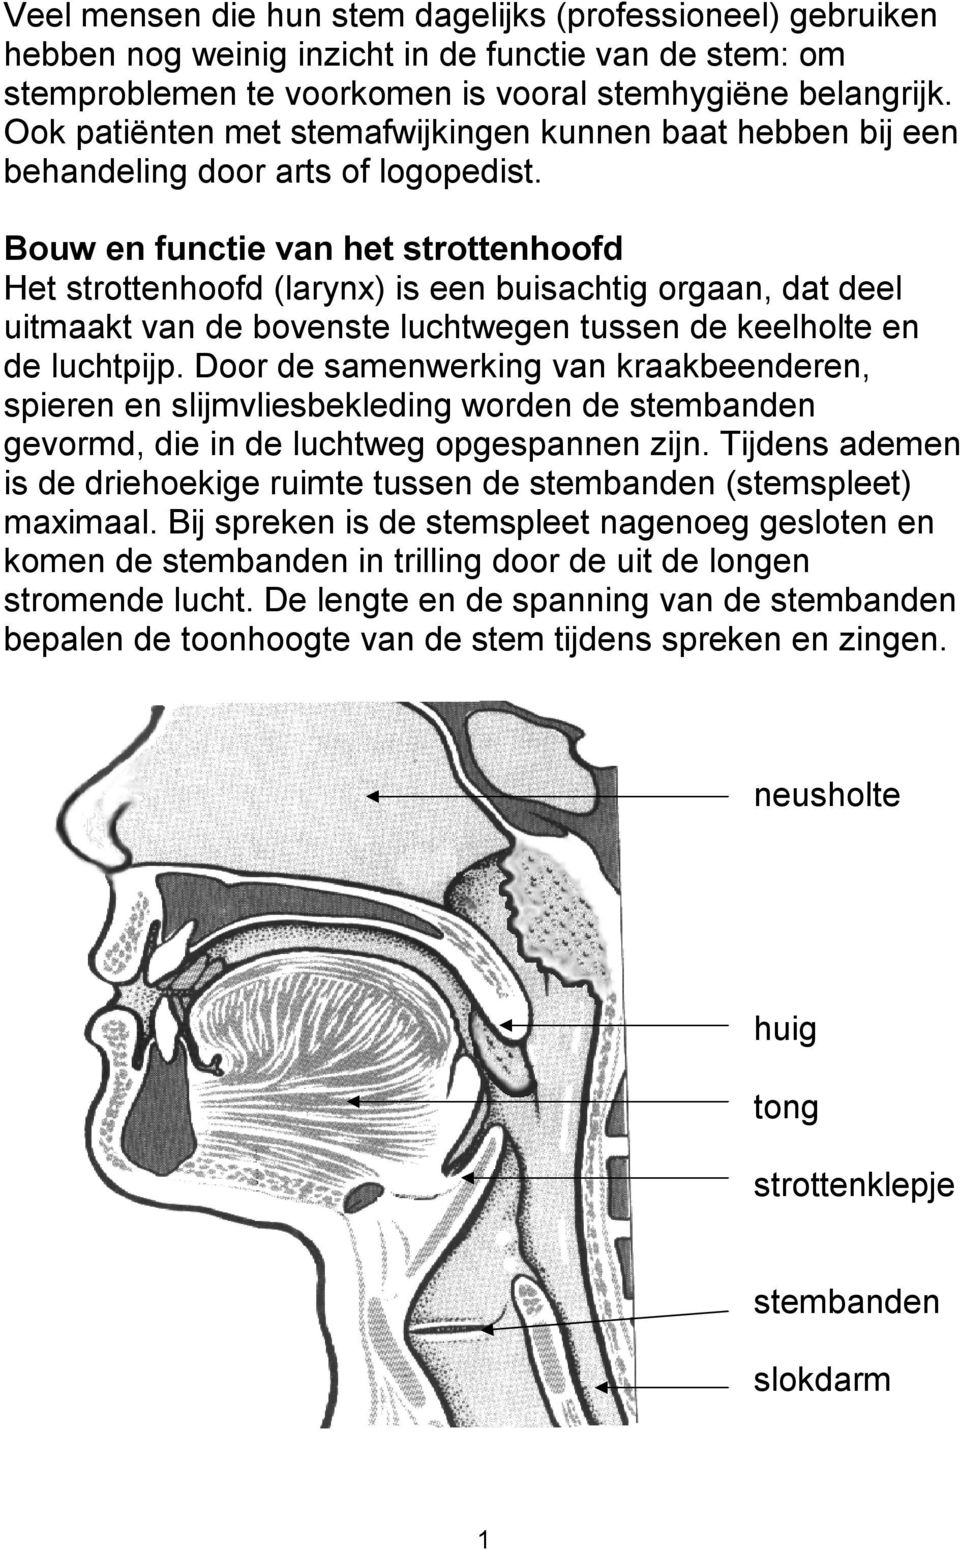 Bouw en functie van het strottenhoofd Het strottenhoofd (larynx) is een buisachtig orgaan, dat deel uitmaakt van de bovenste luchtwegen tussen de keelholte en de luchtpijp.